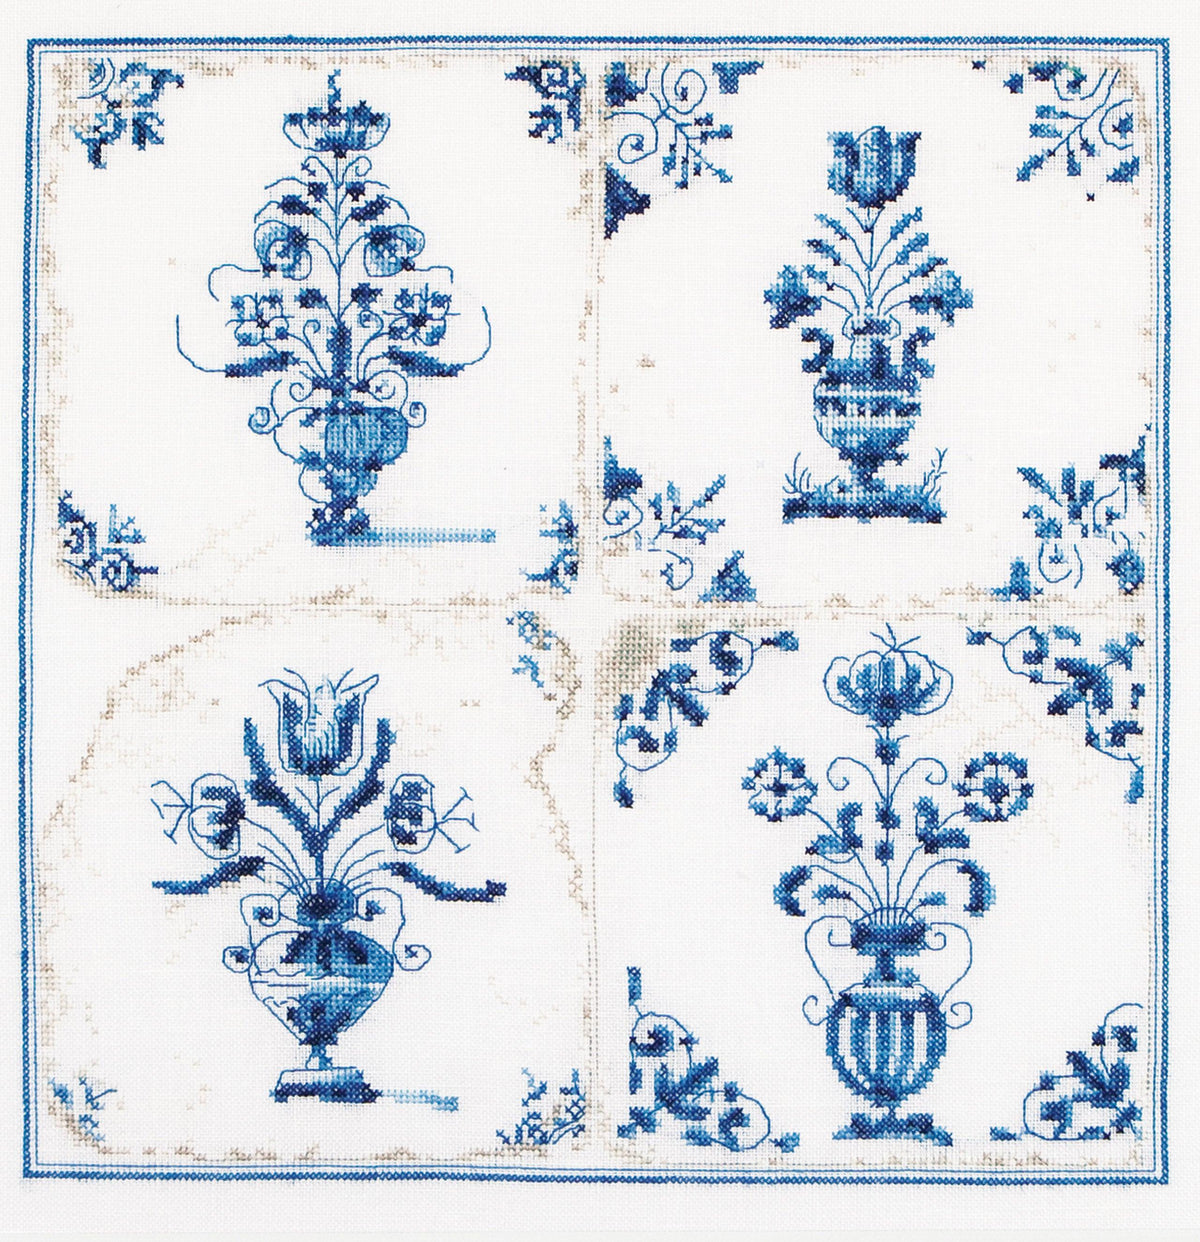 Thea Gouverneur - Counted Cross Stitch Kit - Antique Tiles Flower Vases - Linen - 36 count - 483 - Thea Gouverneur Since 1959